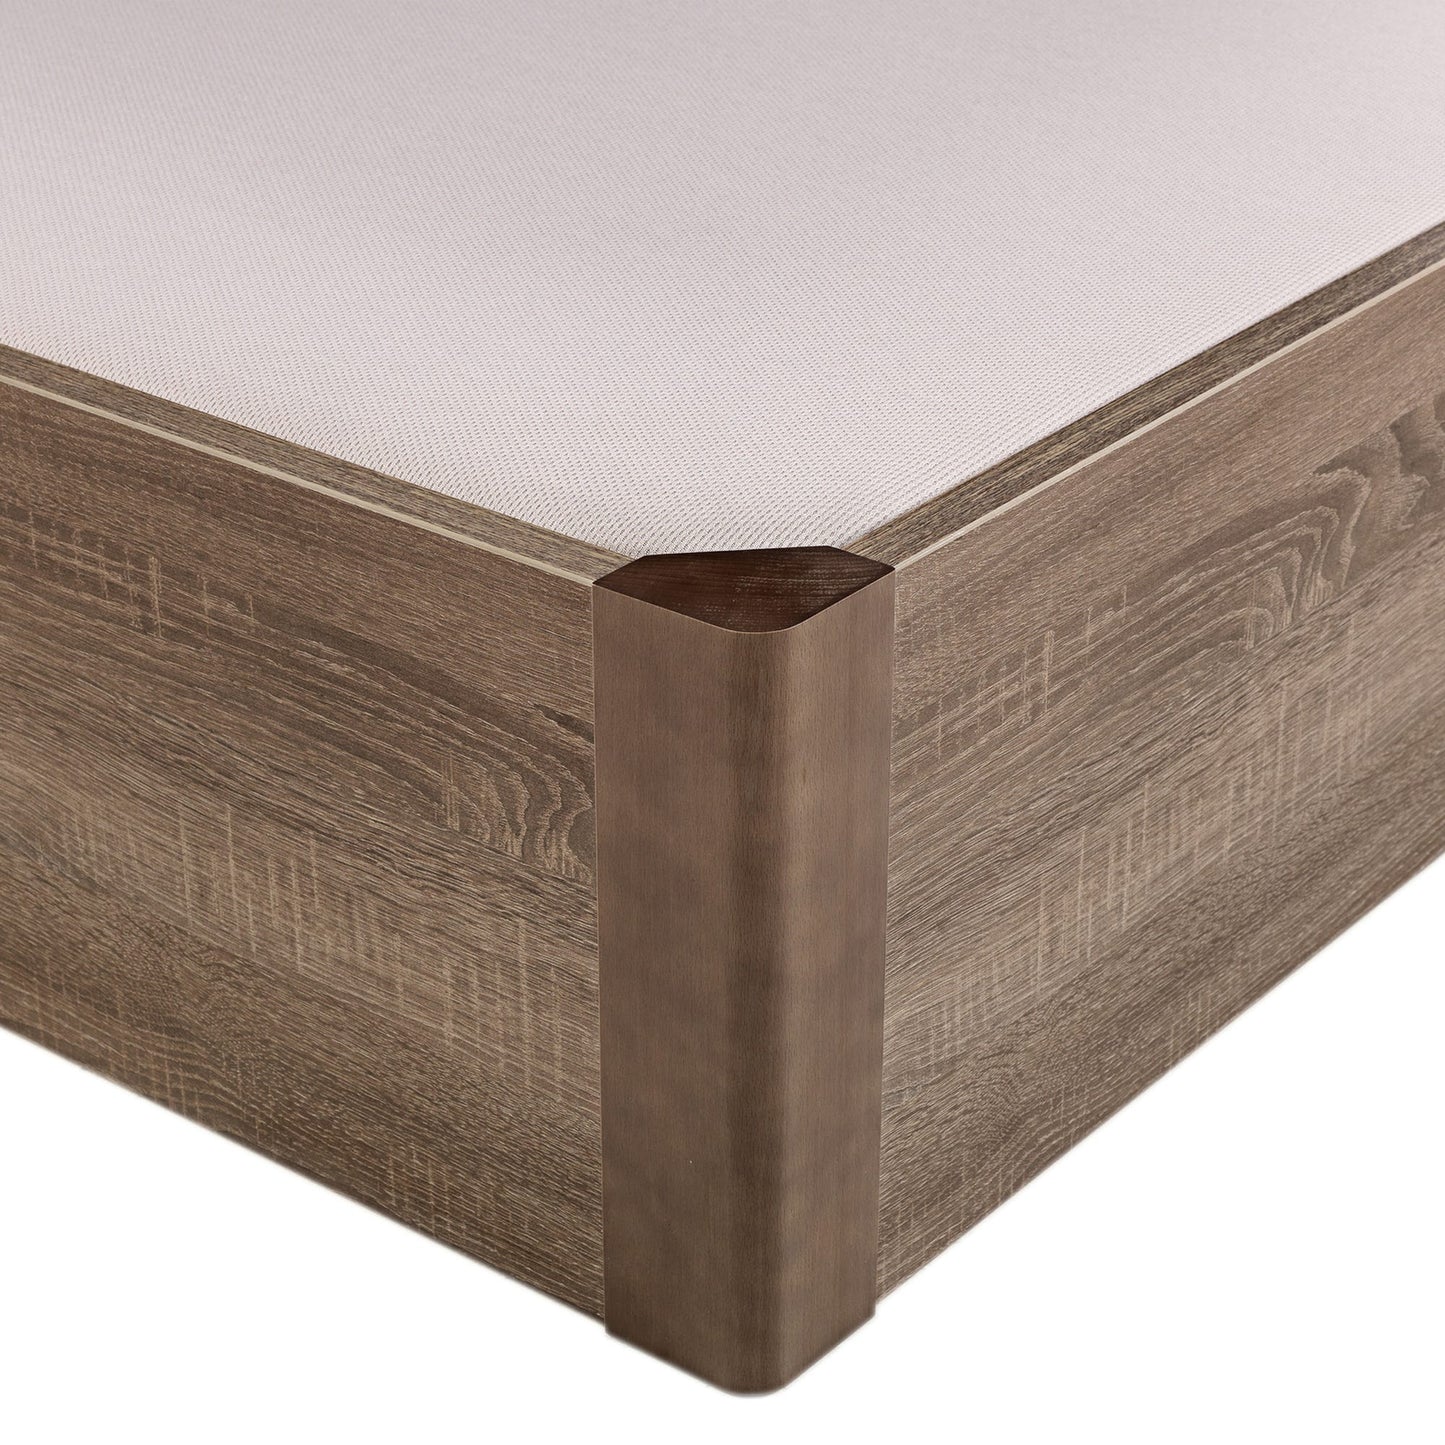 Canapé abatible de madera tapa única de color roble - DESIGN - 120x182